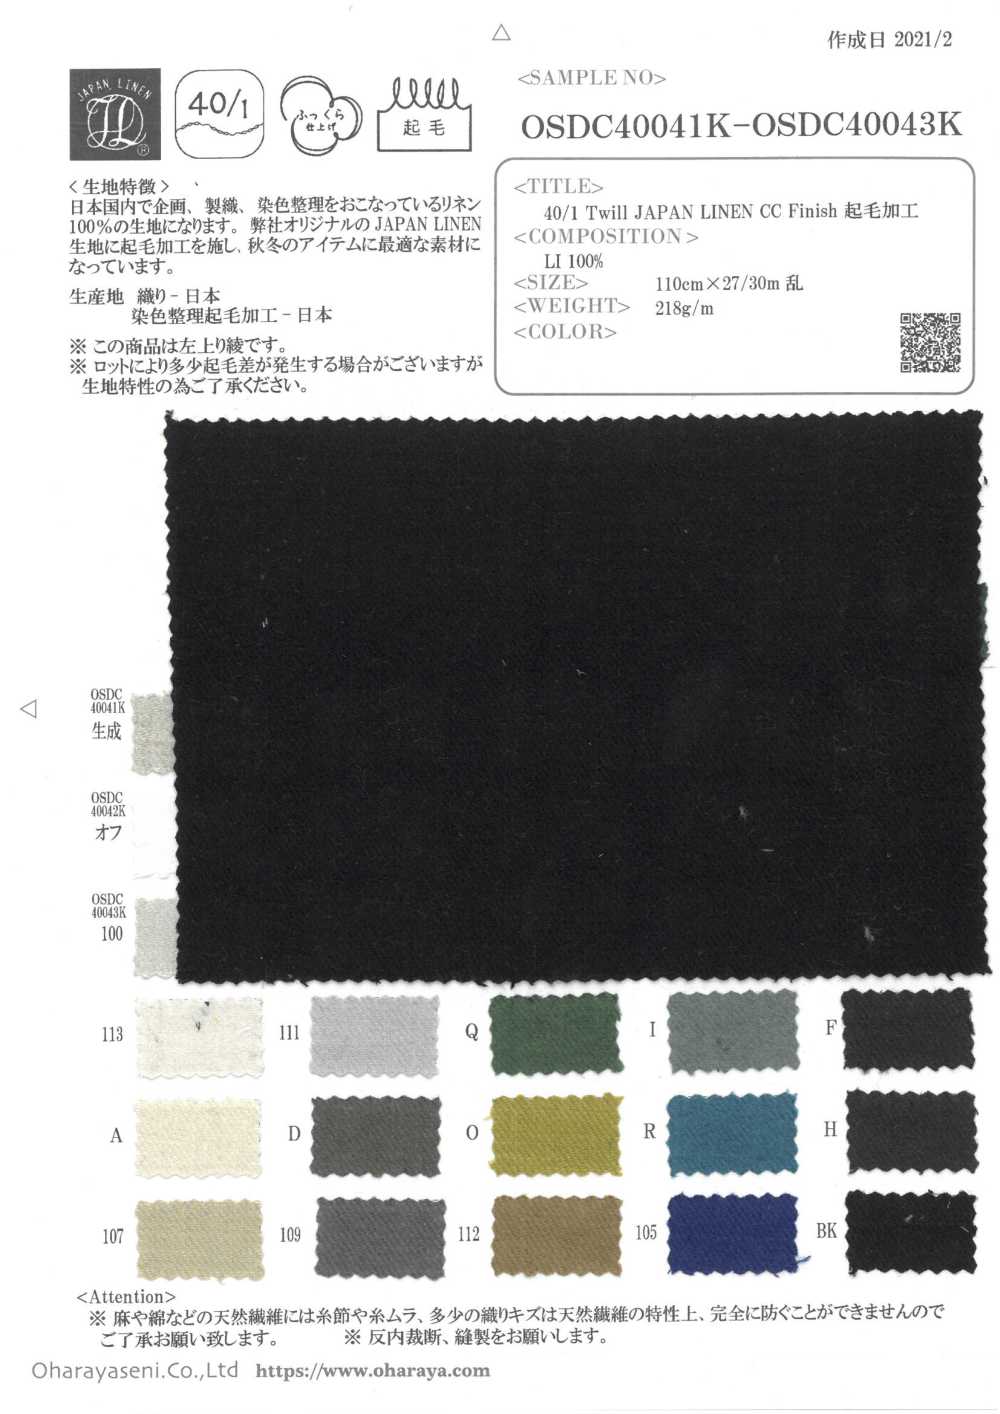 OSDC40042K 40/1 Twill JAPAN LINEN CC Finish Fuzzy Finish[Textile / Fabric] Oharayaseni